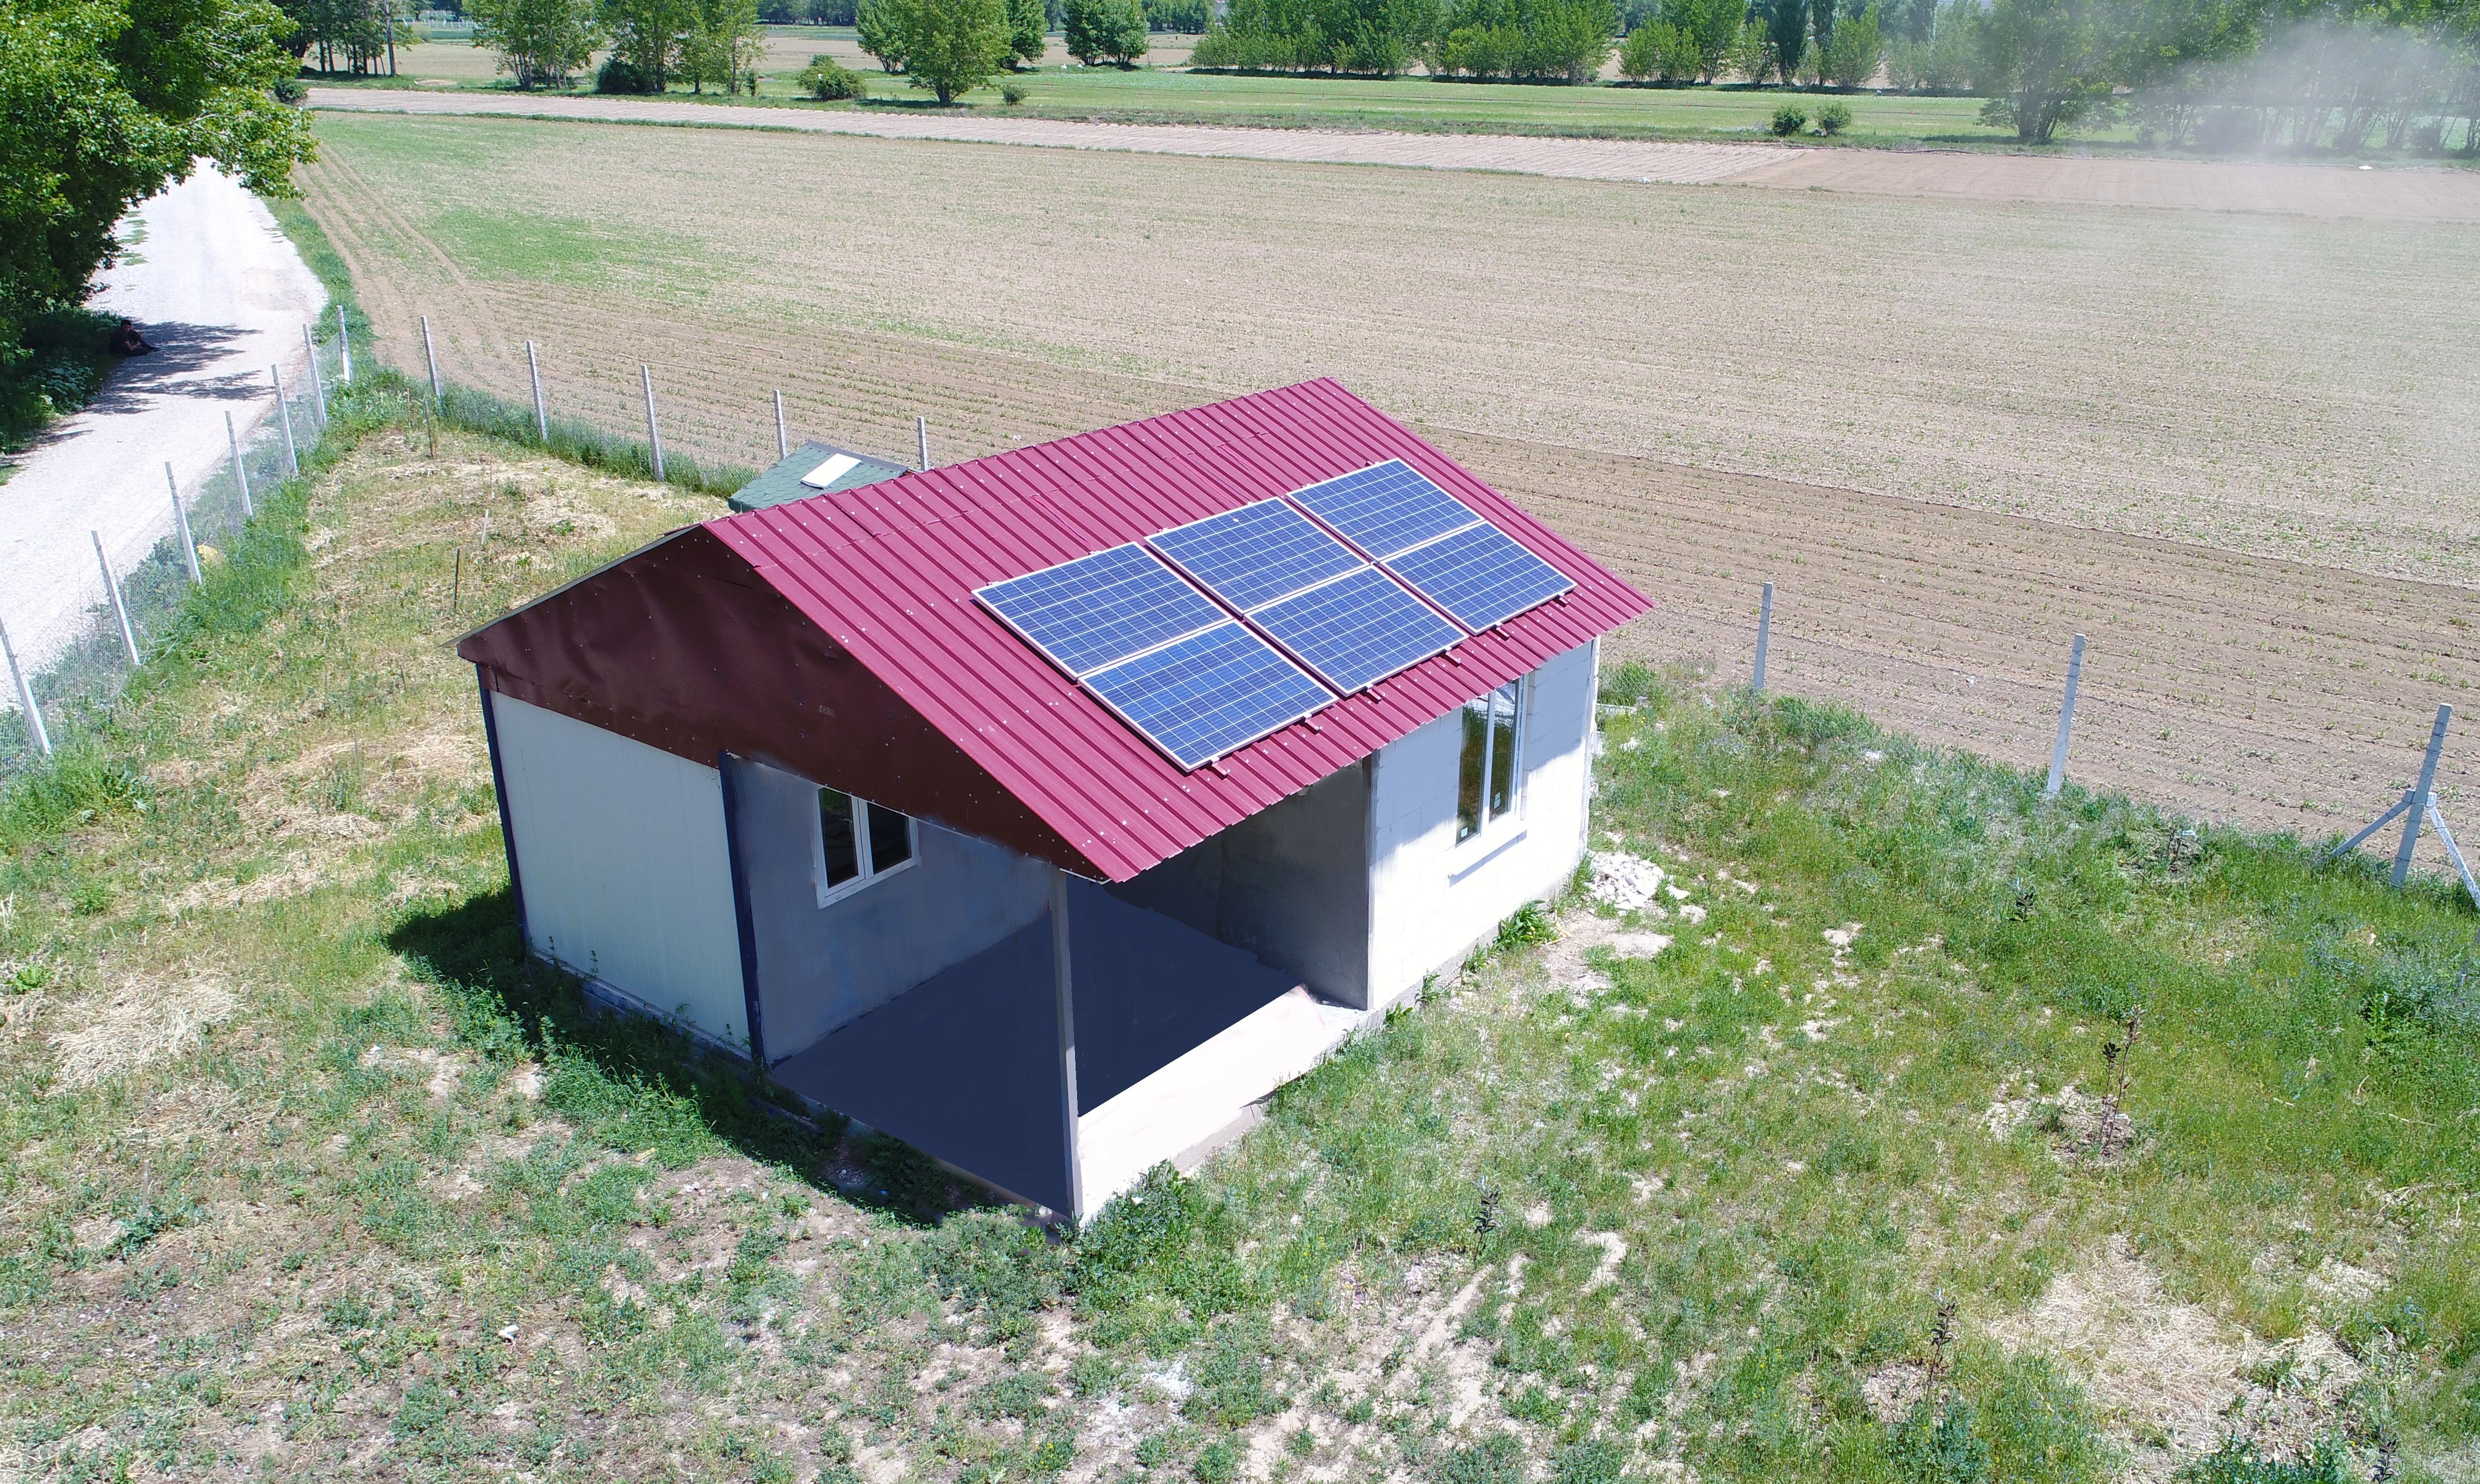 BTB SOLAR - Eskişehir Güneş Paneli, Çatı Uygulamaları